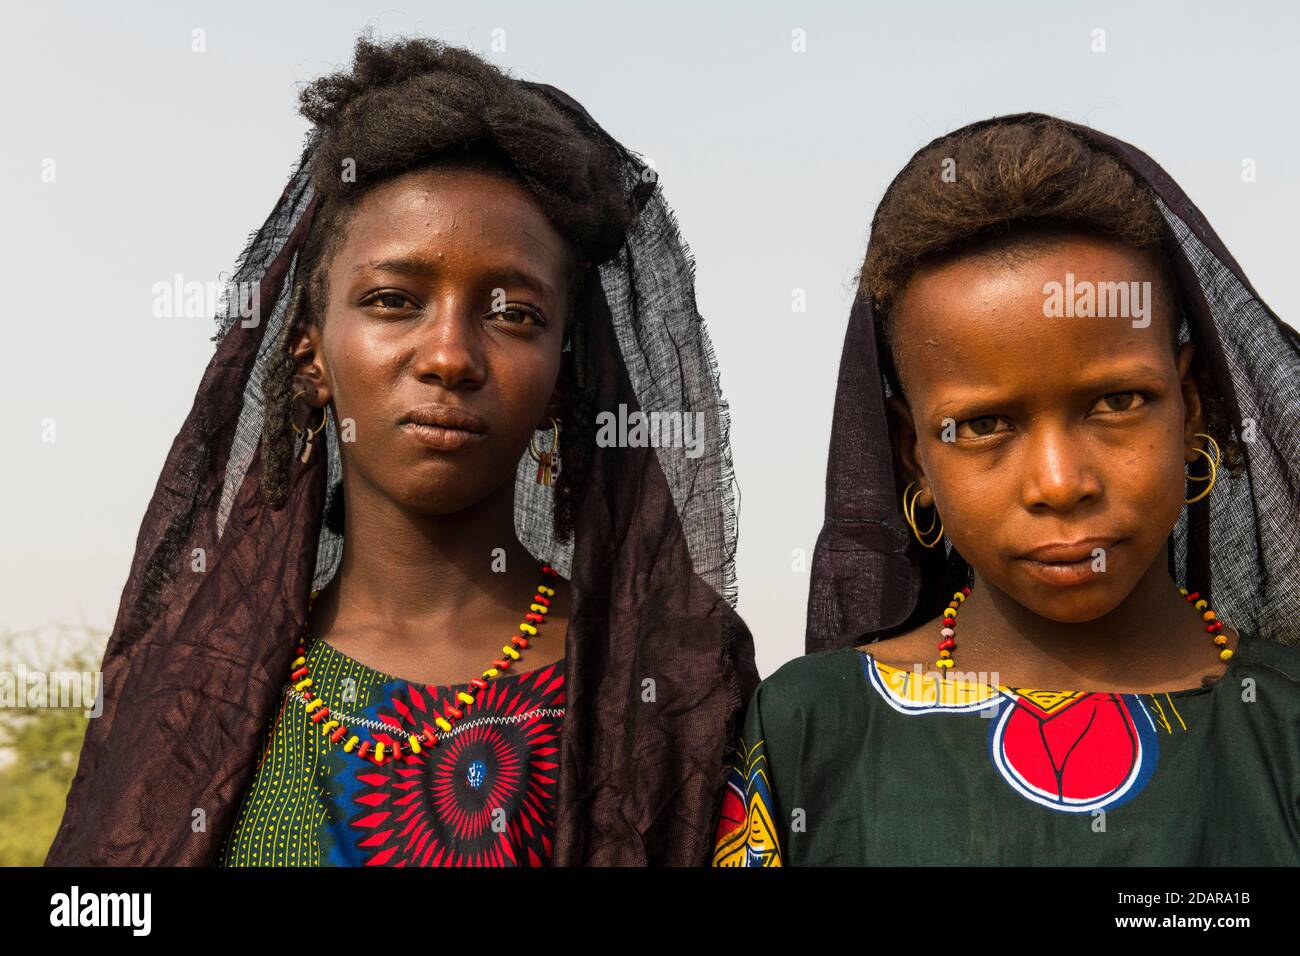 Niñas jóvenes en el festival de Gerewol, concurso ritual de cortejo entre el pueblo Woodaabe Fula, Níger Foto de stock